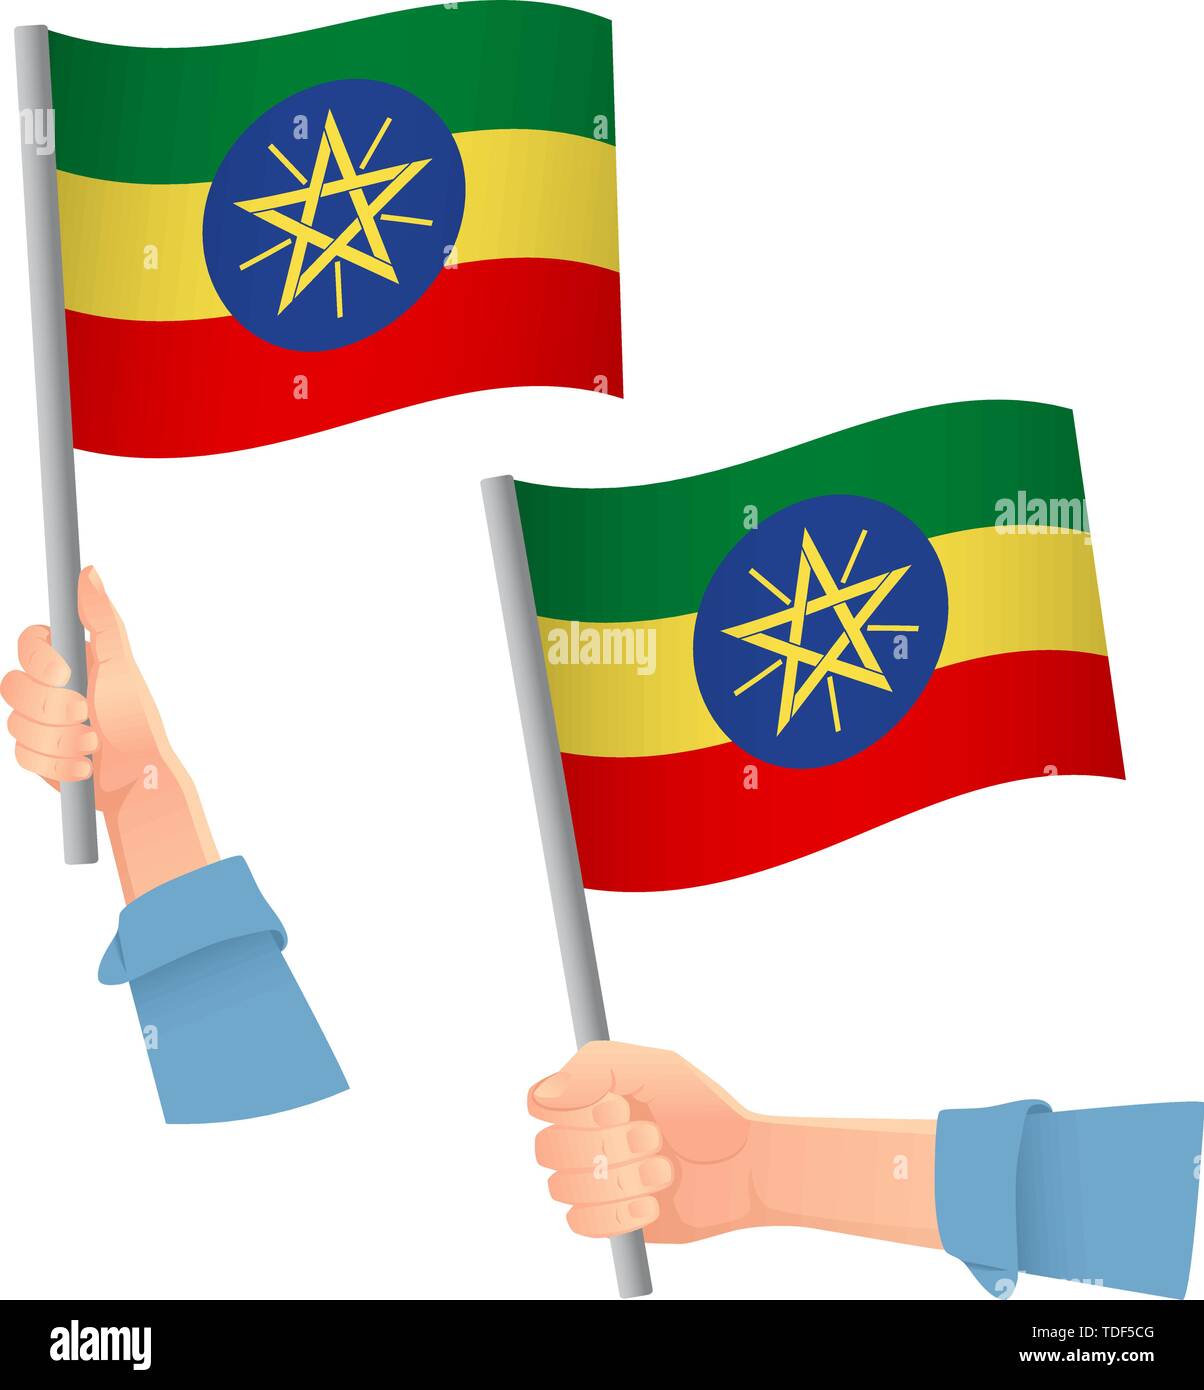 Ethiopia flag hi